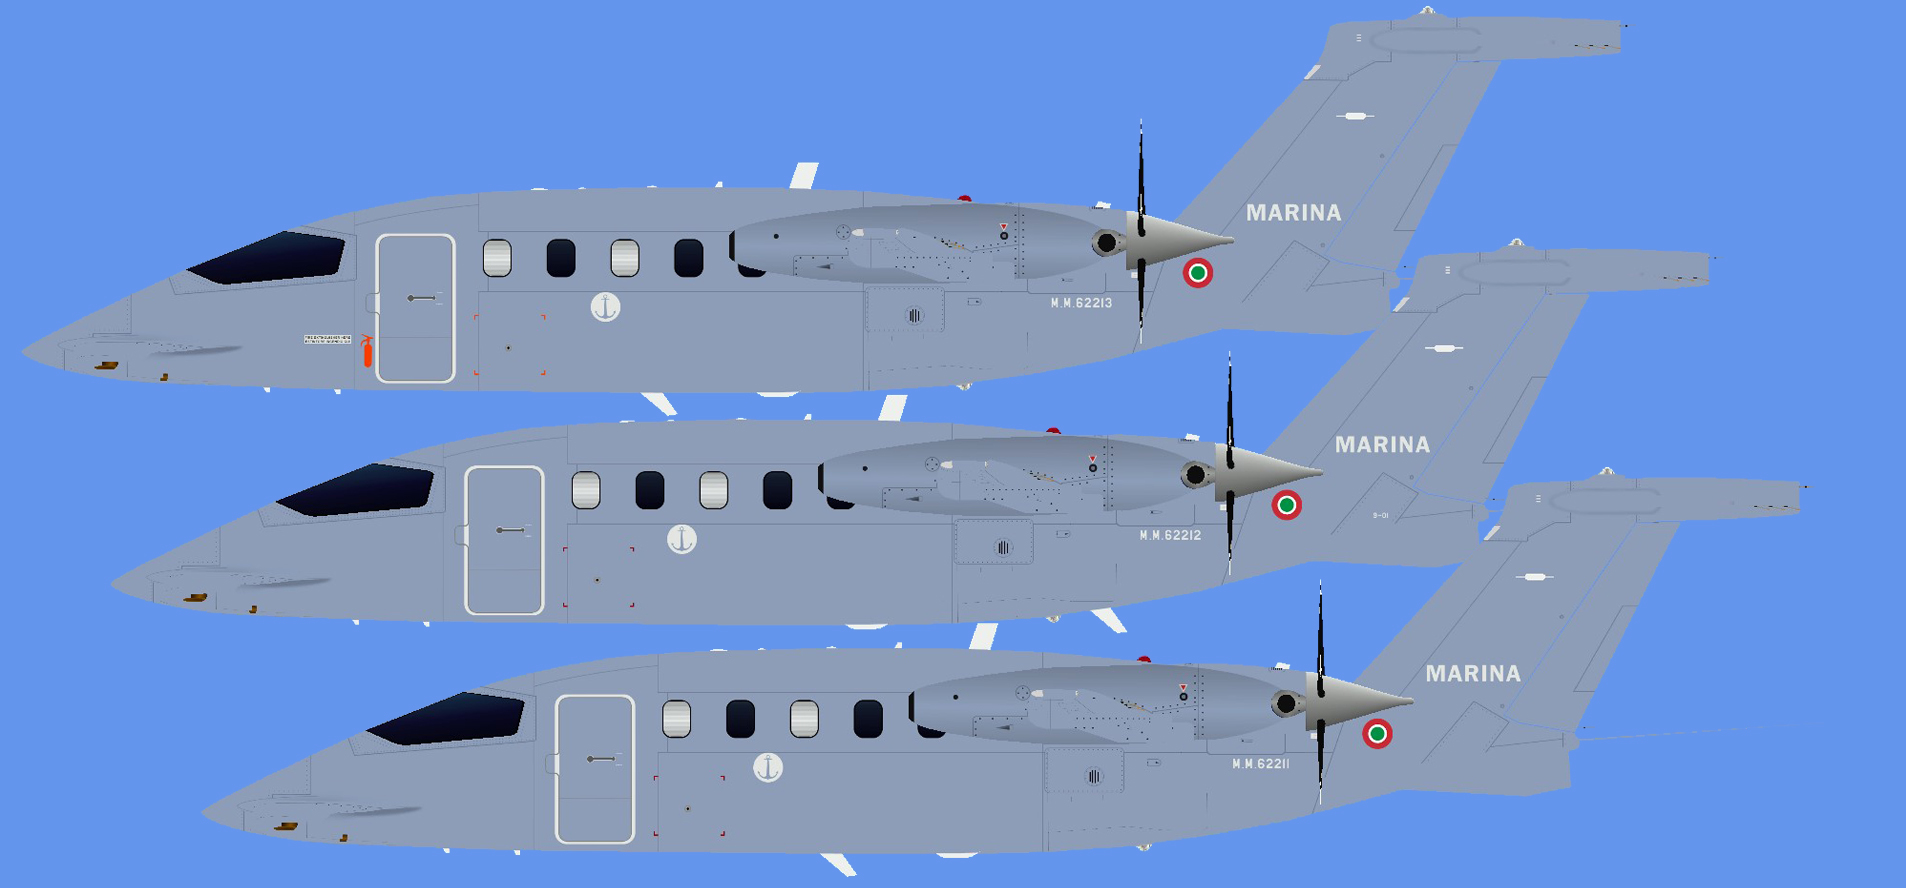 Piaggio P-180AM Marina Militare